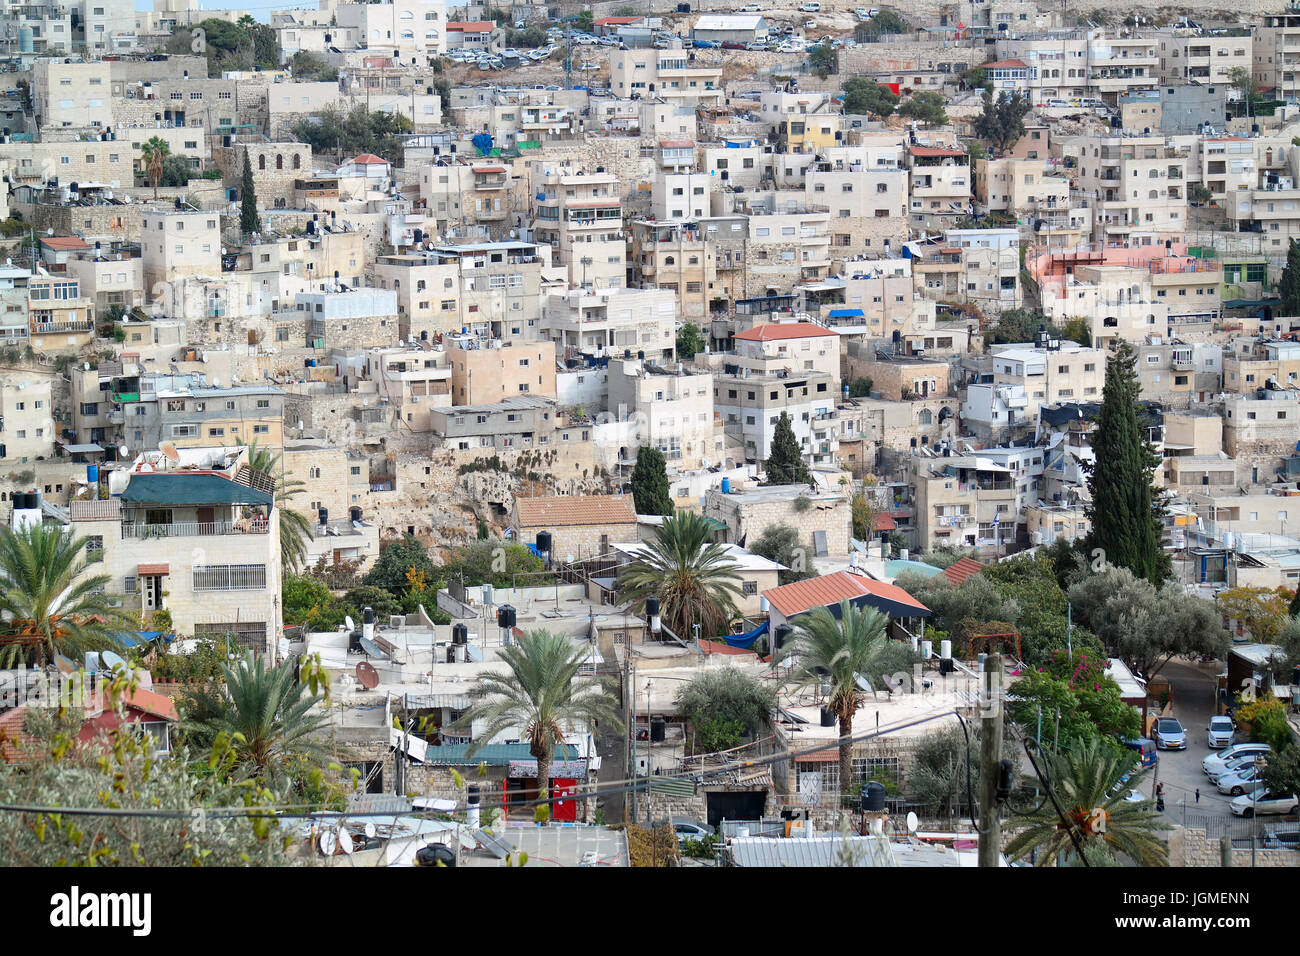 Case palestinesi su una collina nei pressi del Monte degli Ulivi a Gerusalemme Est Foto Stock